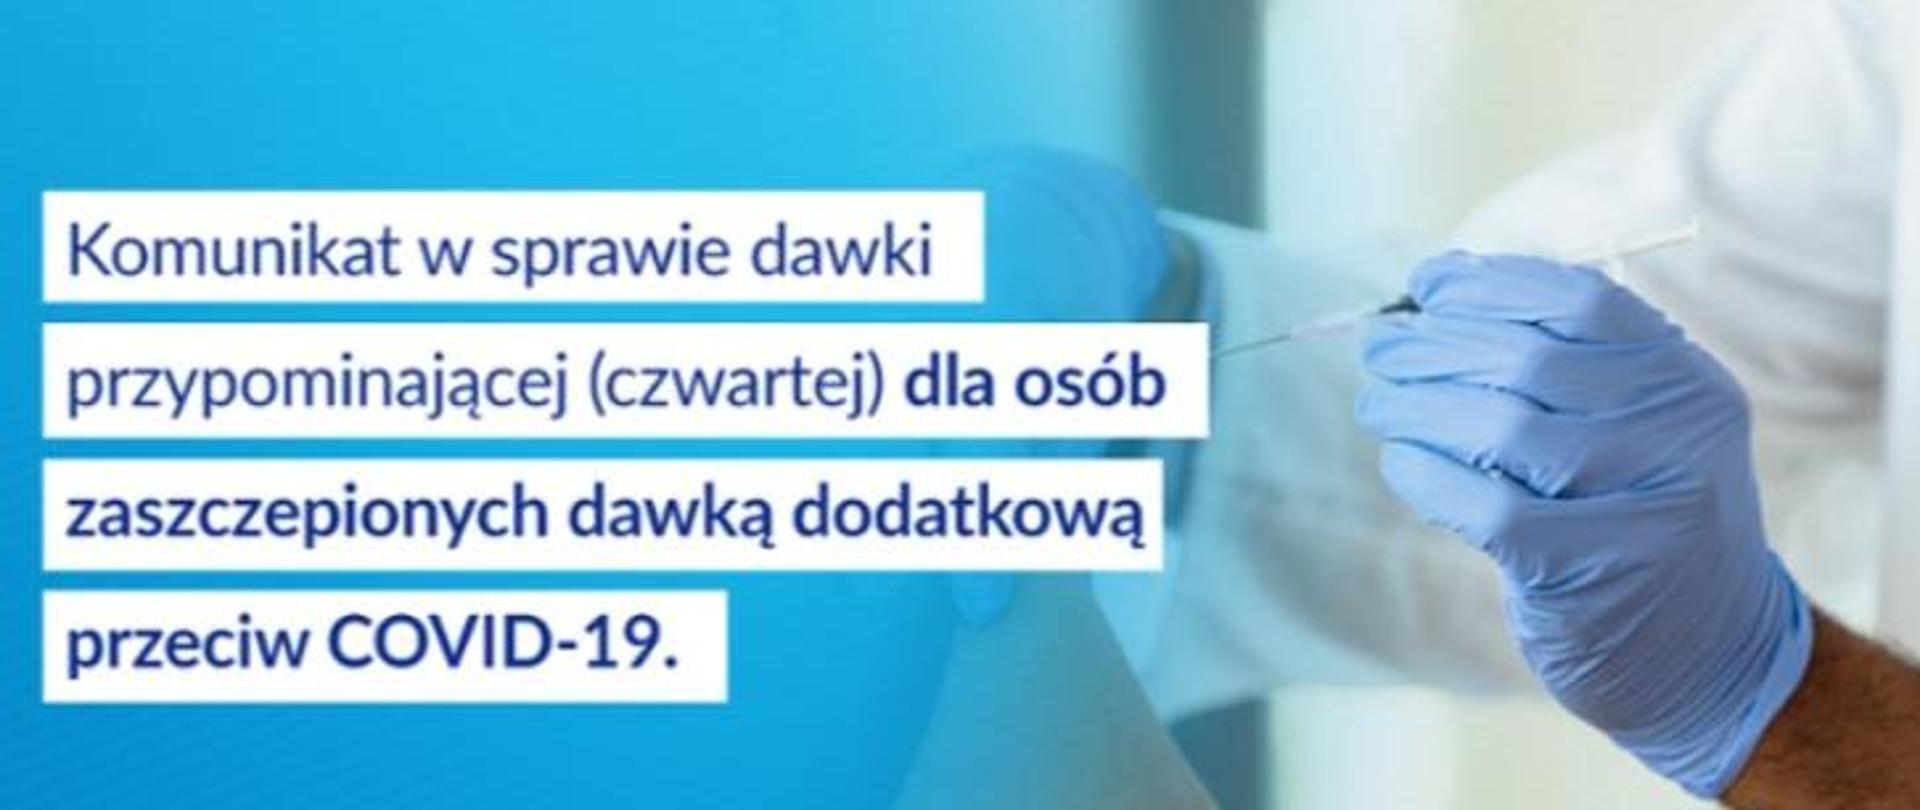 Na obrazie widoczne są dłonie medyka oraz ramię osoby przez niego szczepionej. Po lewej stronie na niebieskim tle znajduje się napis: Komunikat w sprawie dawki przypominającej (czwartej) dla osób zaszczepionych dawką dodatkową przeciw COVID-19.
